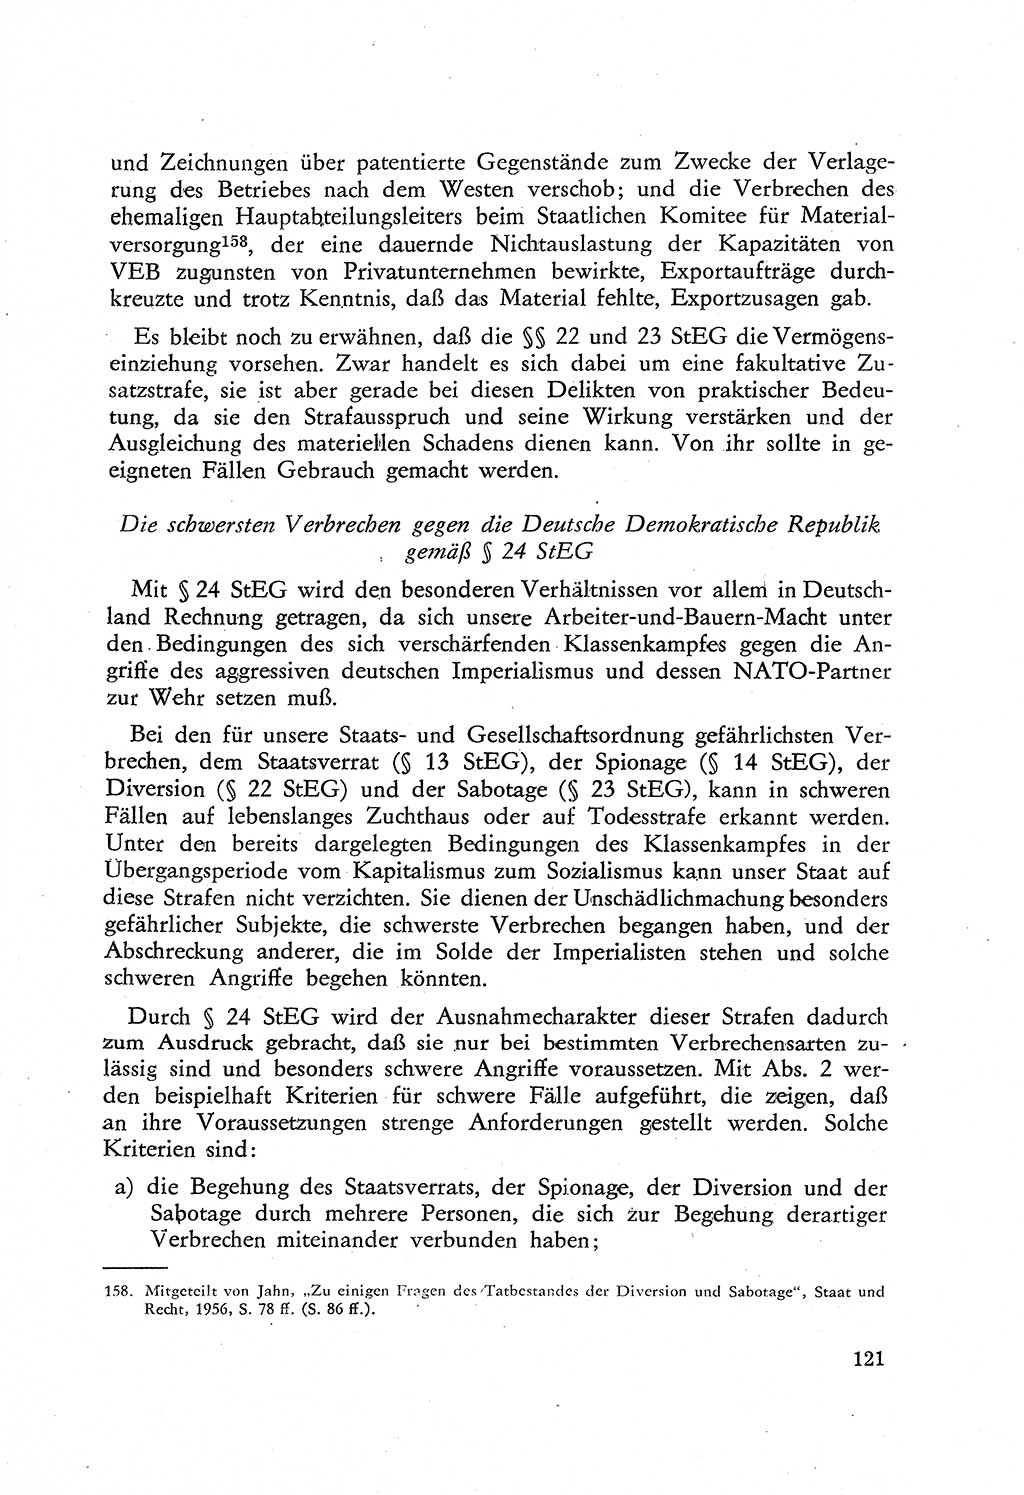 Beiträge zum Strafrecht [Deutsche Demokratische Republik (DDR)], Staatsverbrechen 1959, Seite 121 (Beitr. Strafr. DDR St.-Verbr. 1959, S. 121)